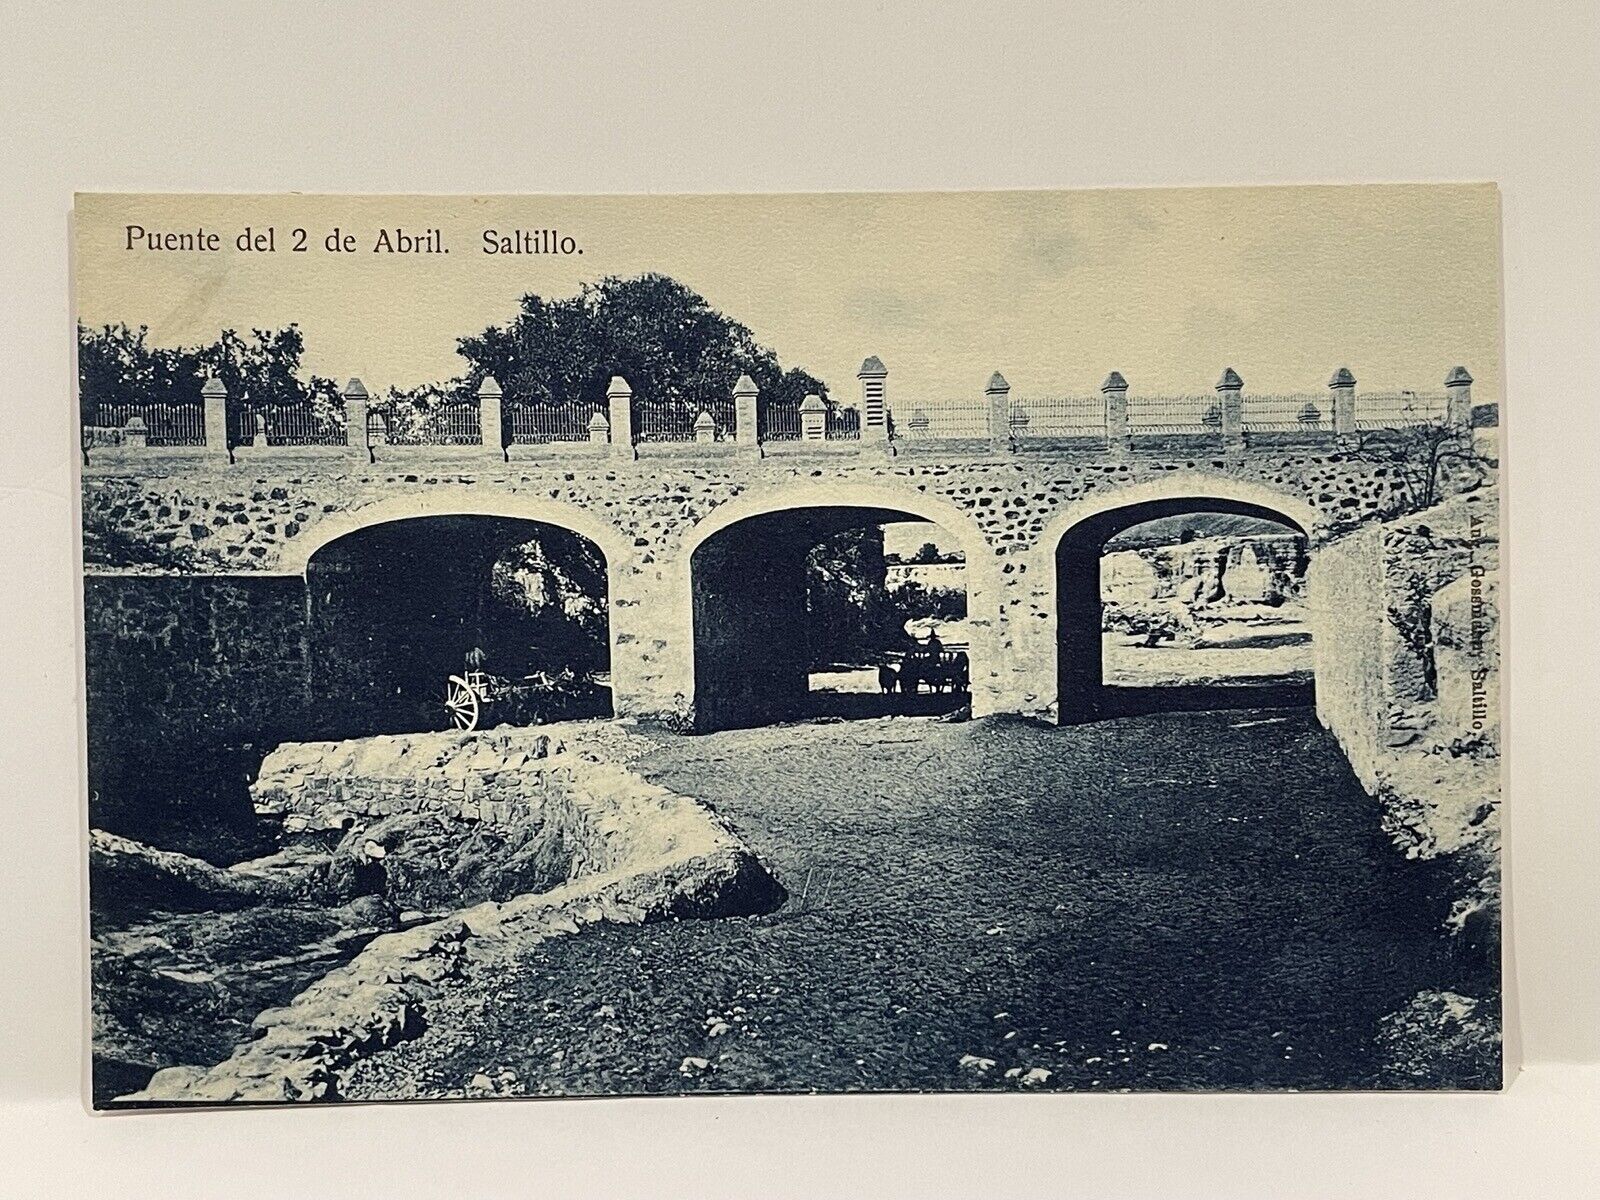 Puente del 2 de Abril. Saltillo. Mexico. Postcard.